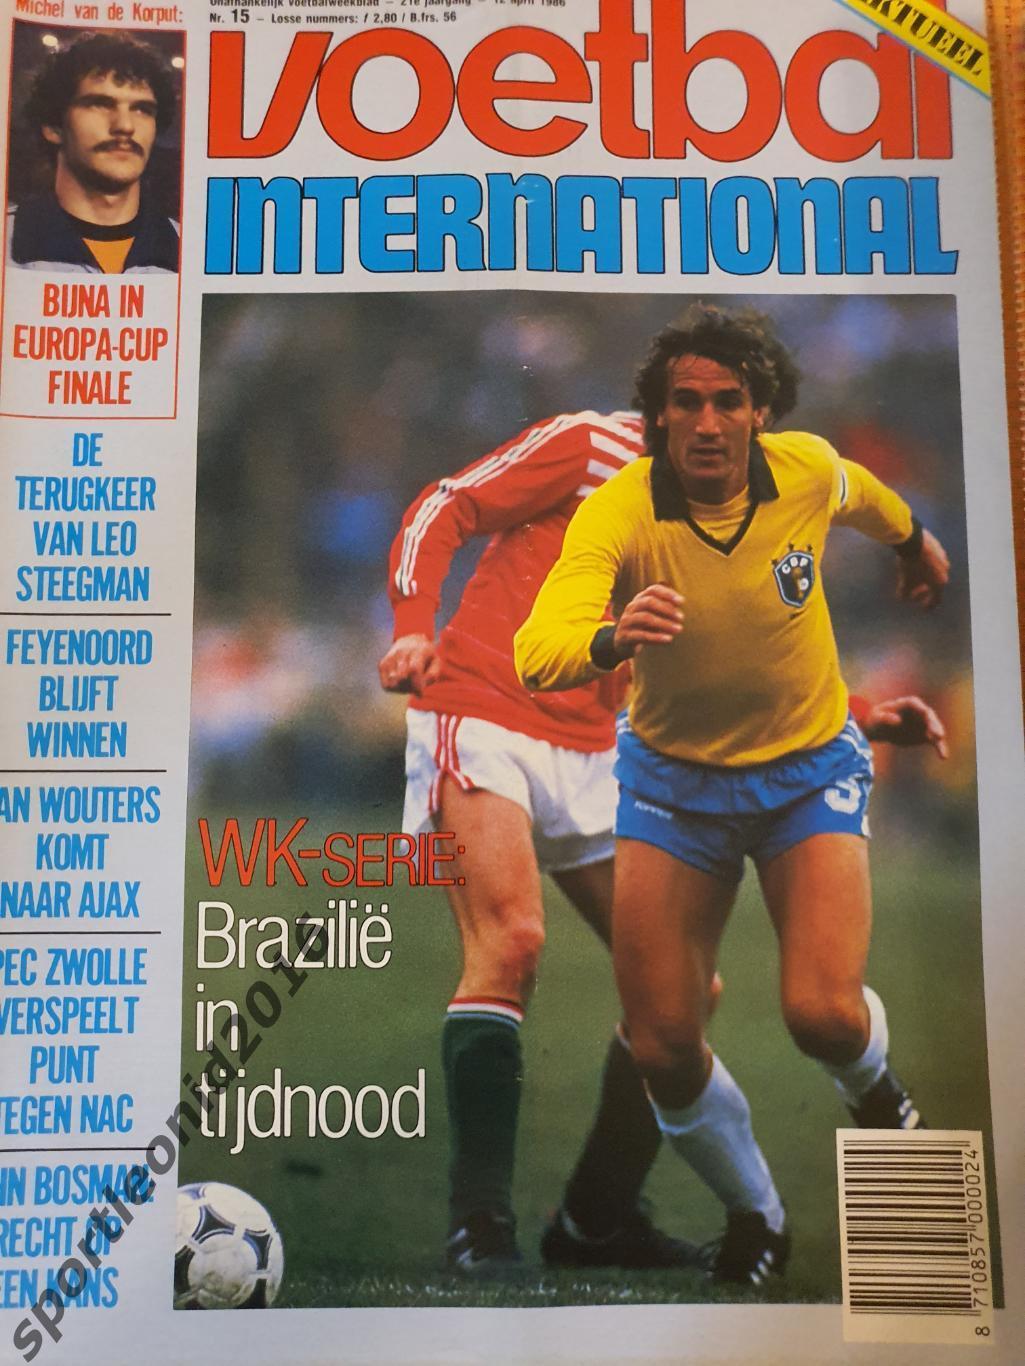 Voetbal International 1986.14 топ выпусков.В том числе итоговые к ЧМ-86.1 3